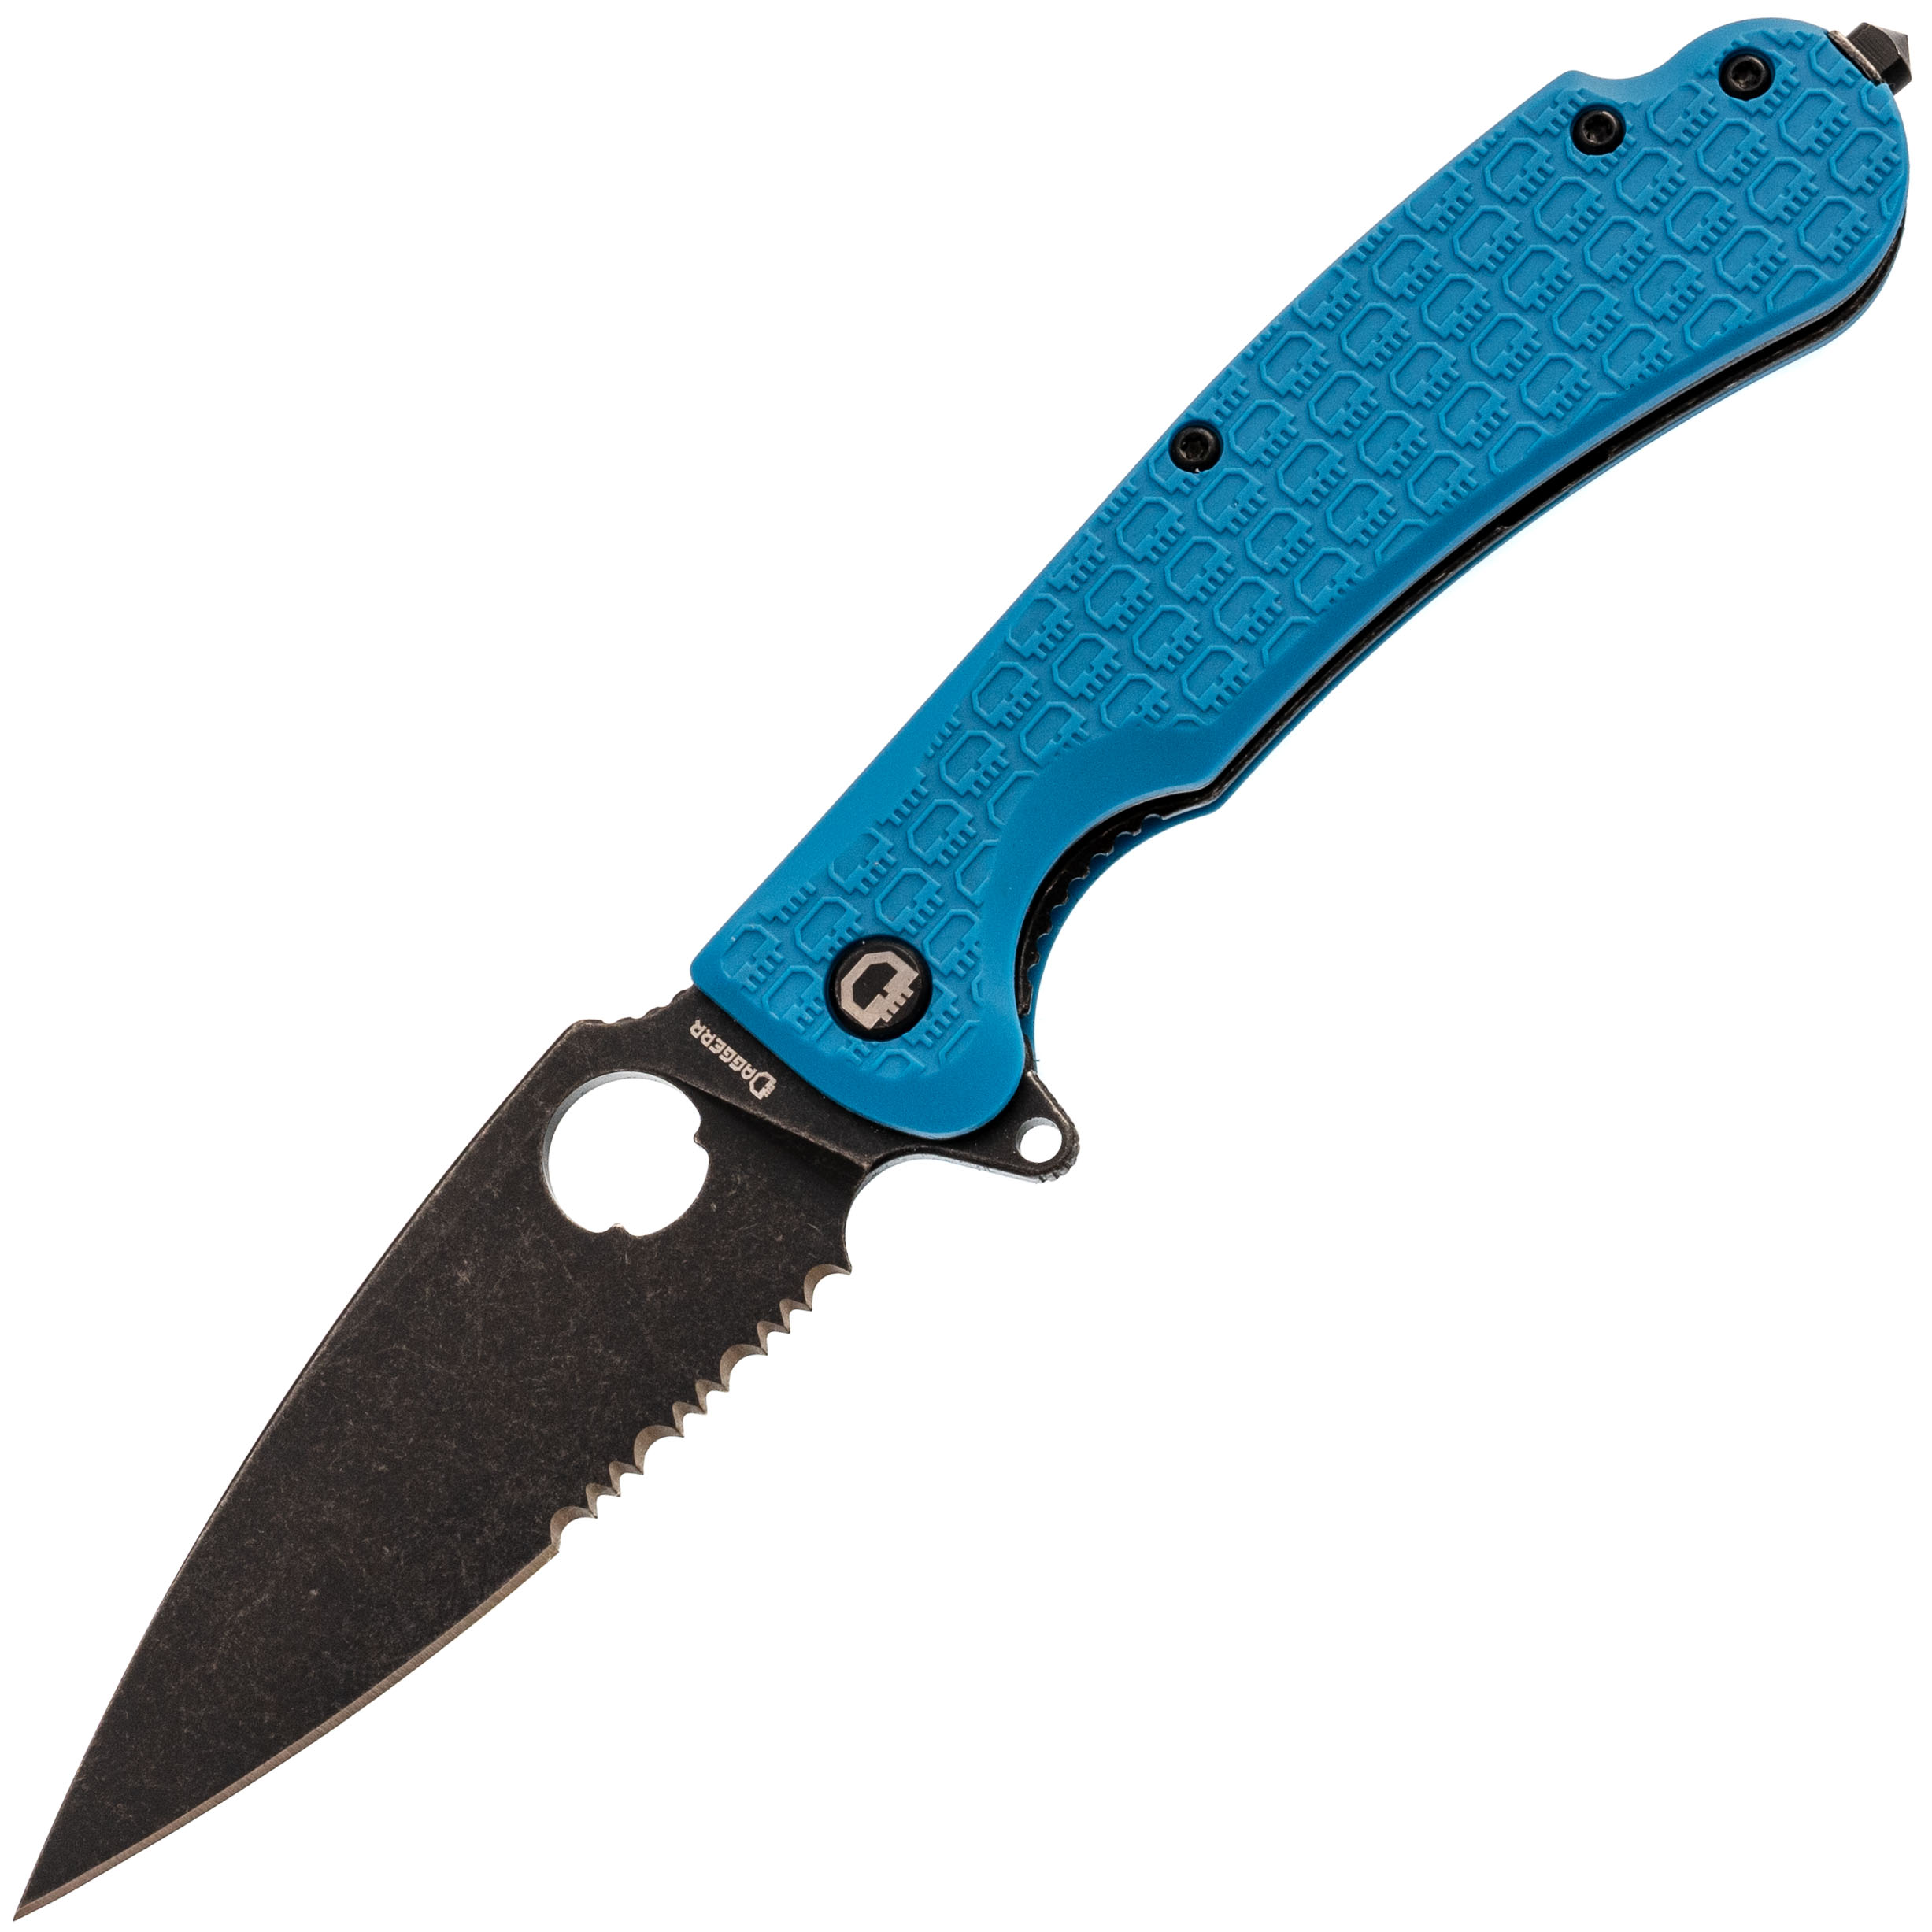 Складной нож Daggerr Resident Blue BW Serrated, сталь 8Cr14MoV, рукоять FRN - фото 1